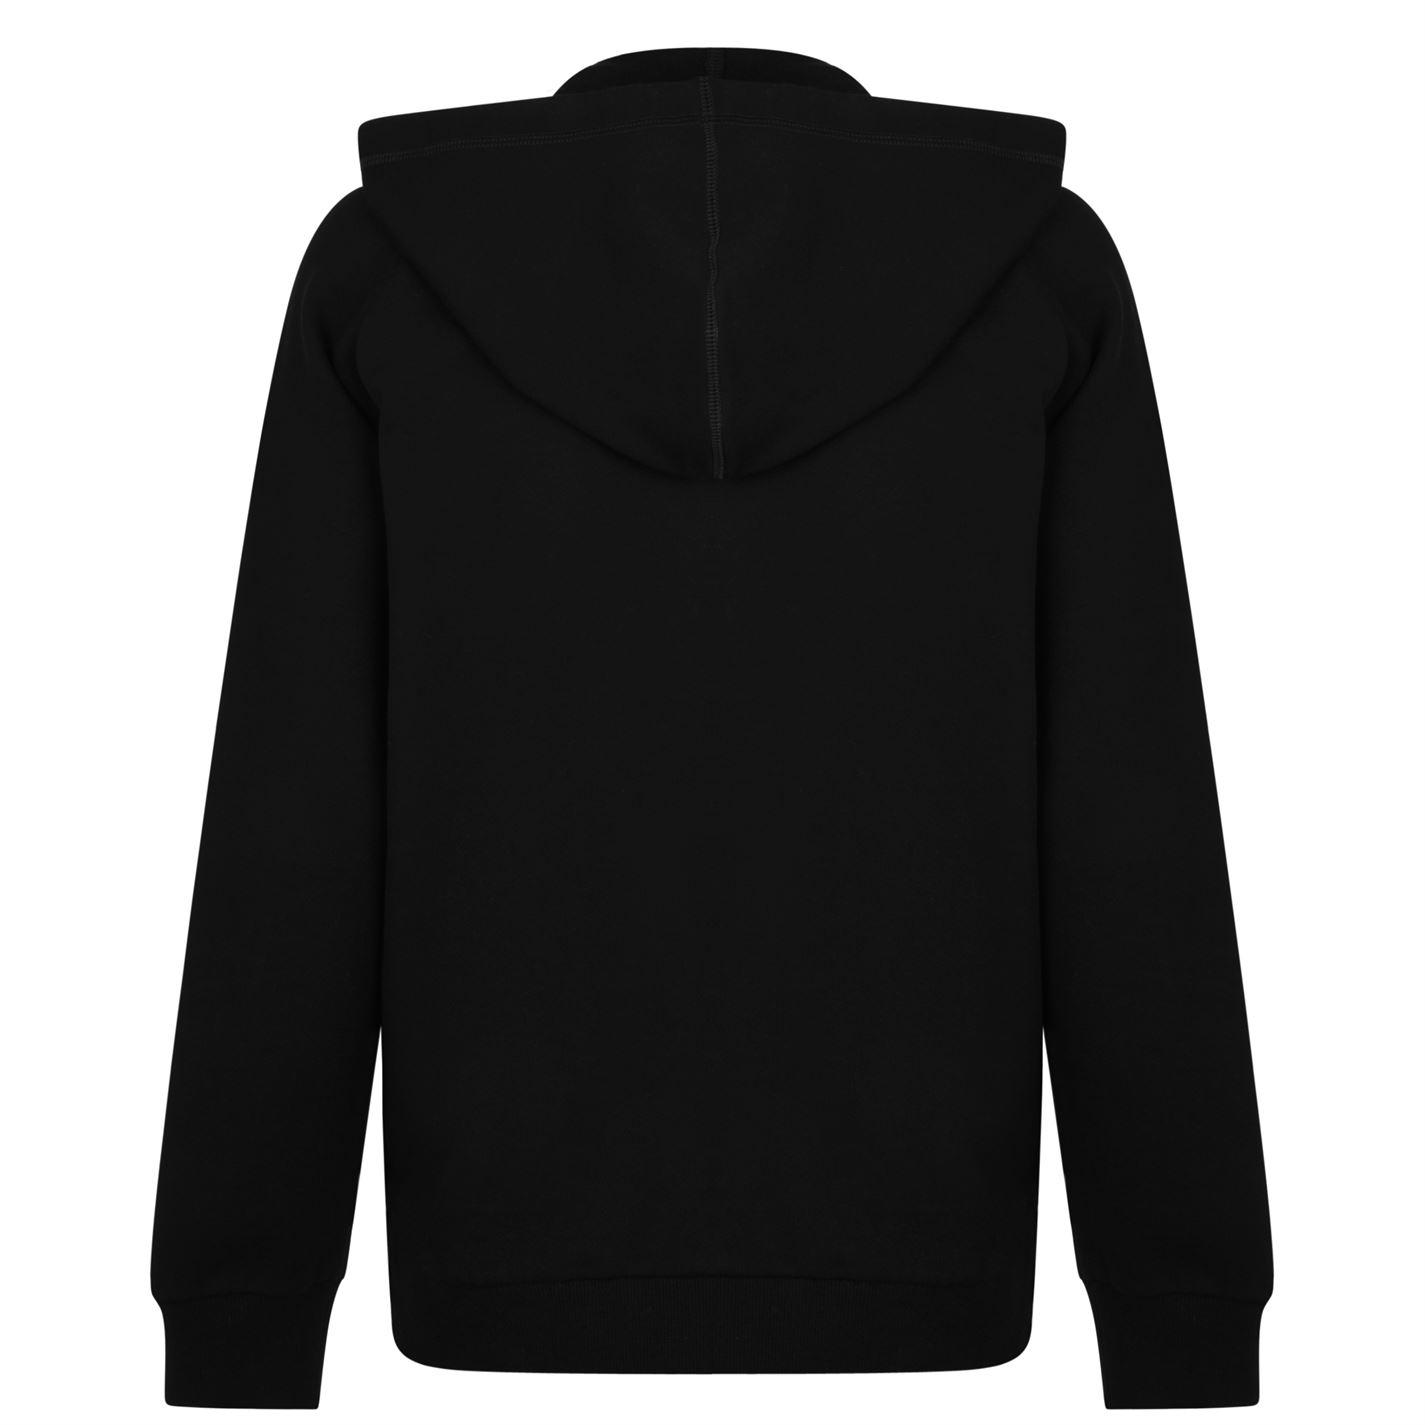 Lyst - Lanvin Logo Hooded Sweatshirt in Black for Men